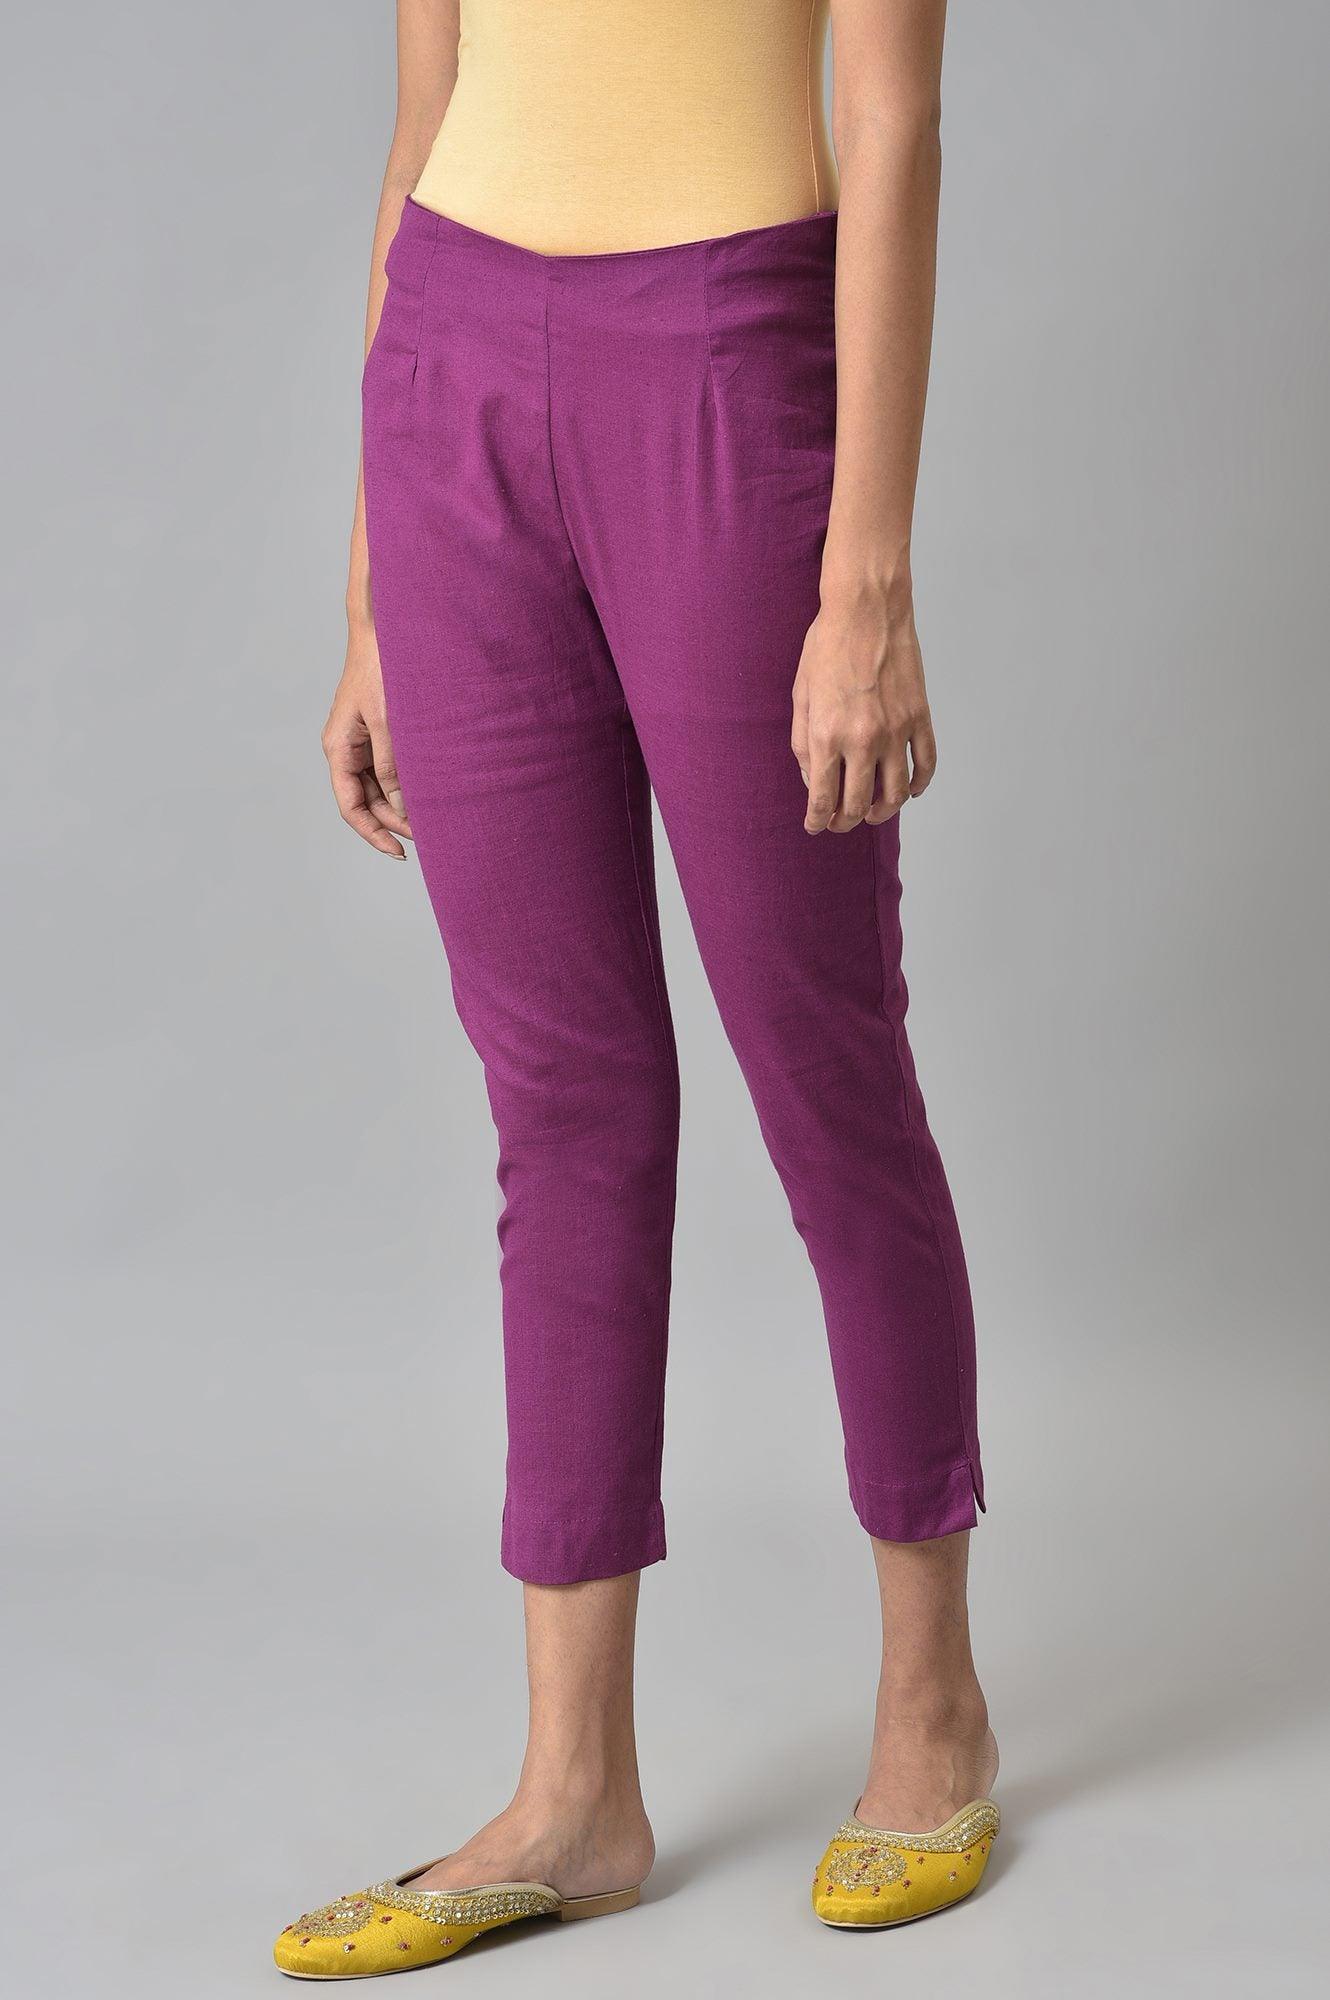 Orchid Purple Cotton Blend Slim Pants - wforwoman